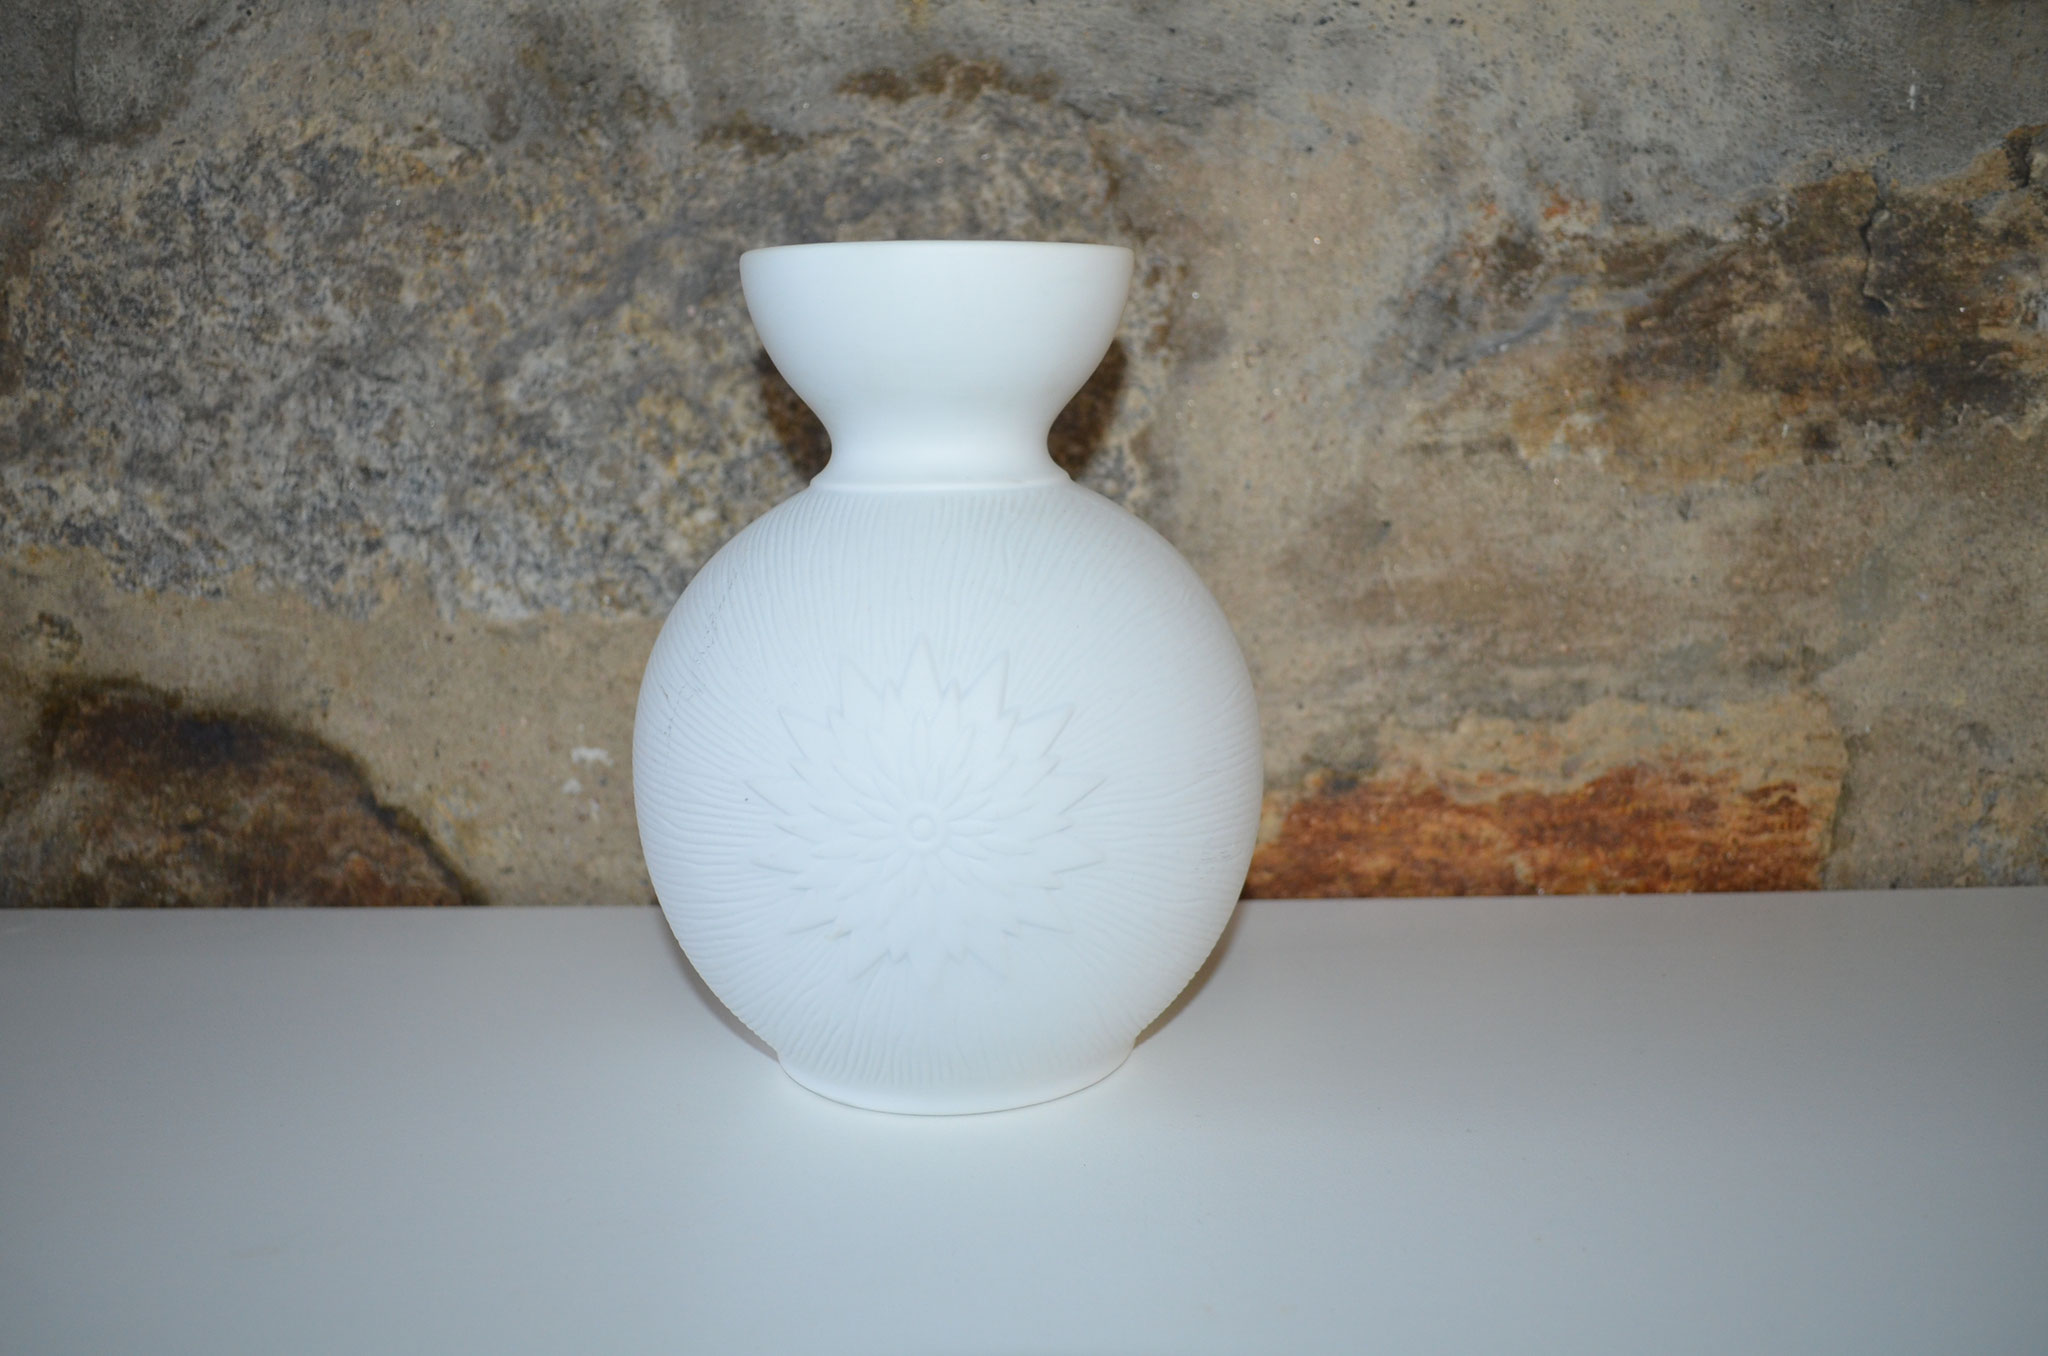 20 cm hohe Mid Century Vase, Biskuitporzellan, innen glasiert, etwa 1960er/1970er Jahre. Top Zustand. Preis: VB 19,90 €